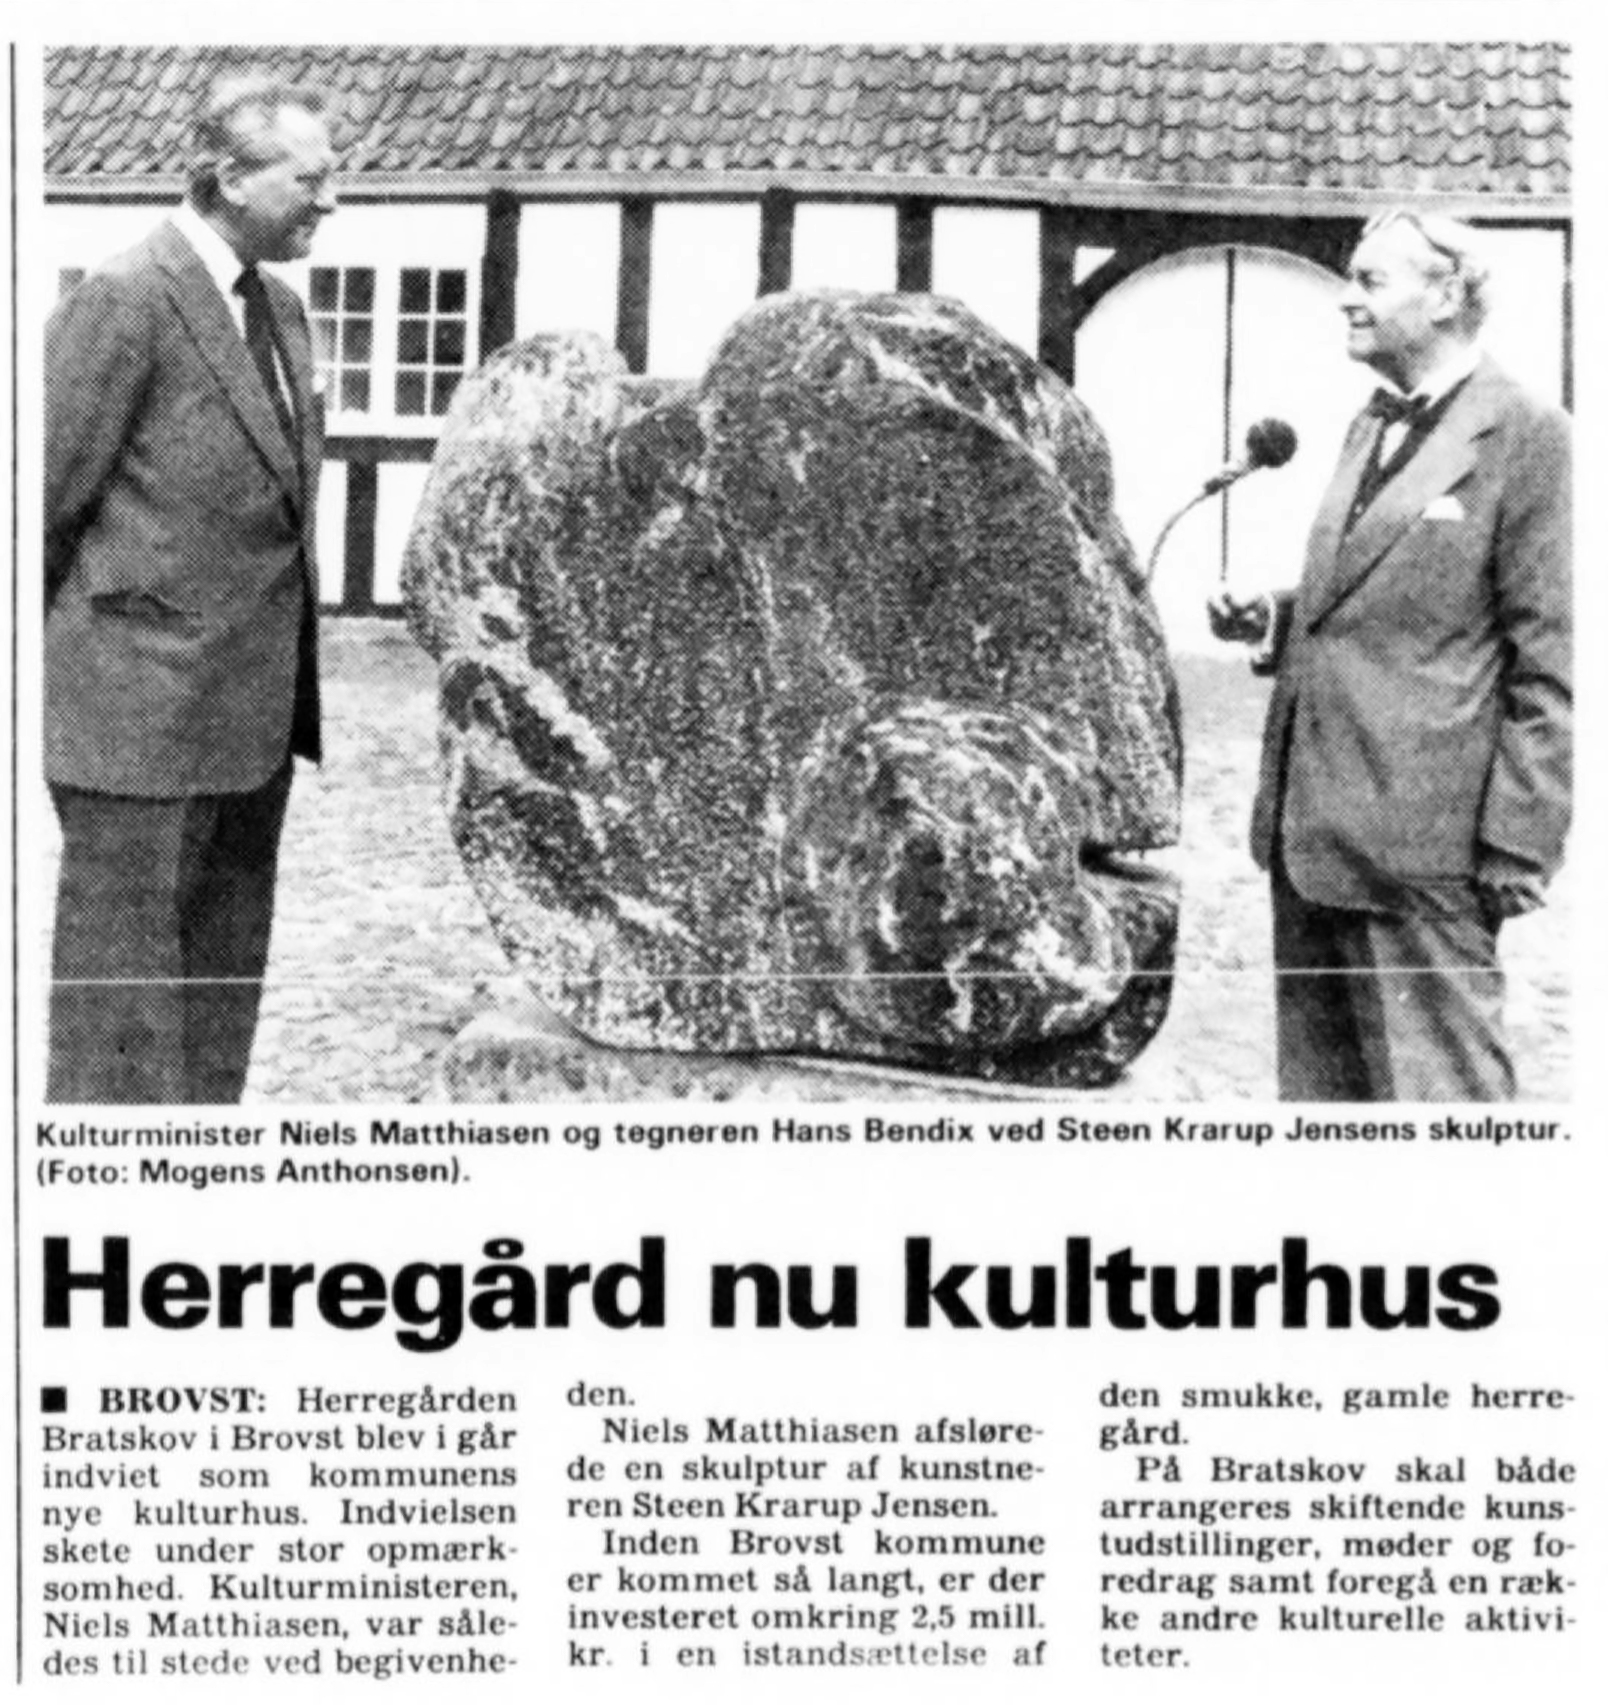 Herregård nu kulturhus. (Med skulpturen som blev sprængt året efter). Bornholmeren.